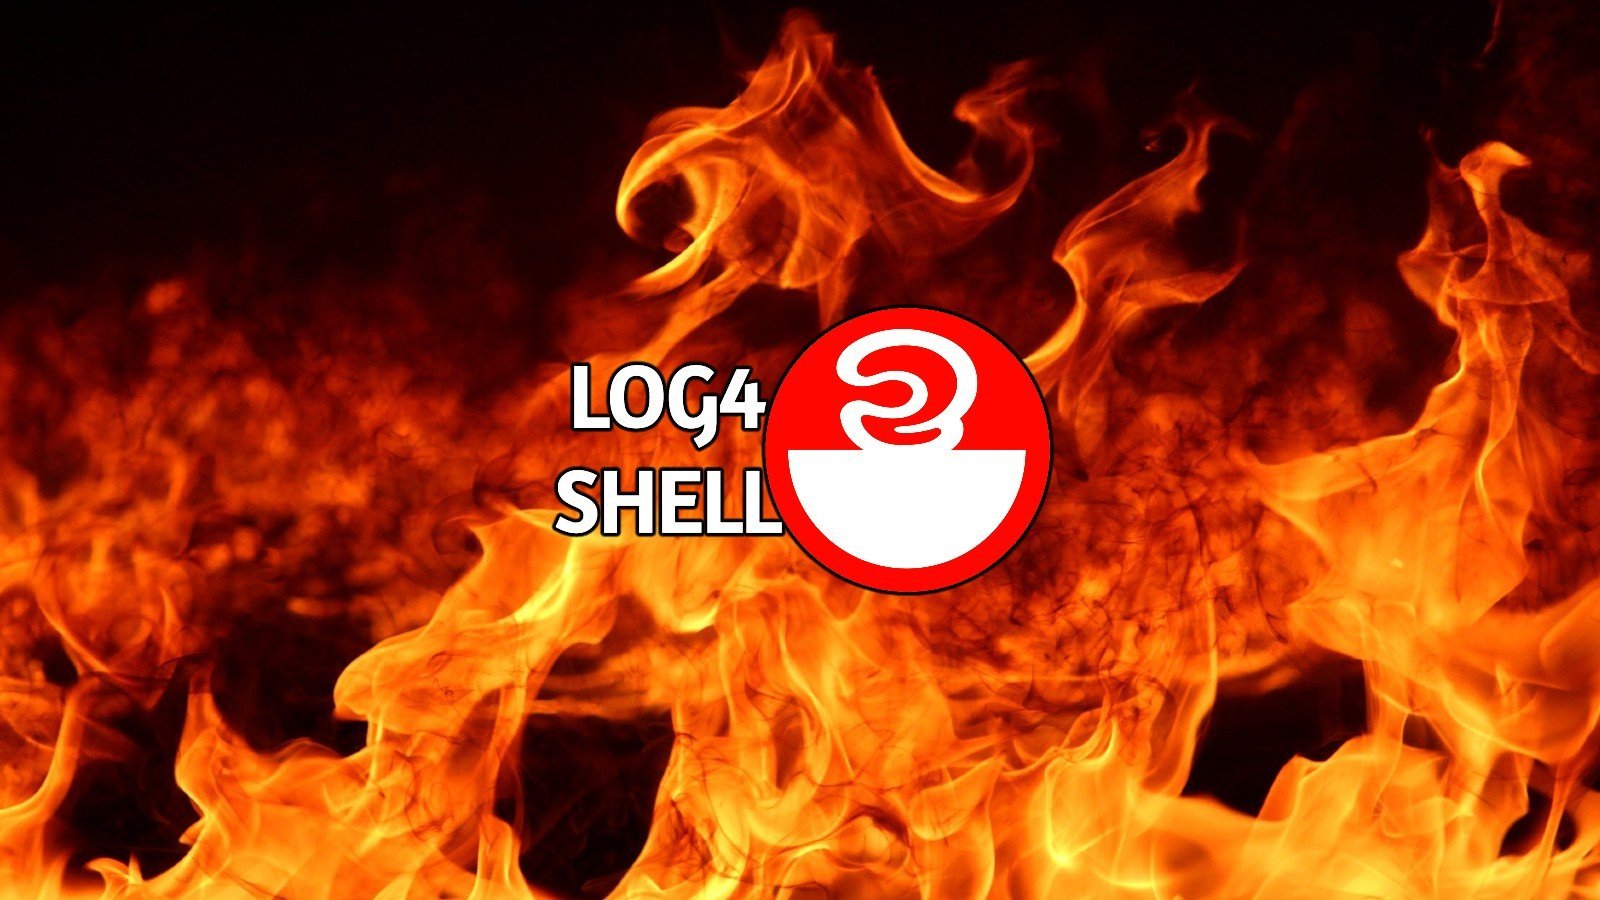 Уязвимость Log4shell теперь используется для создания DDoS-ботнетов и криптомайнеров